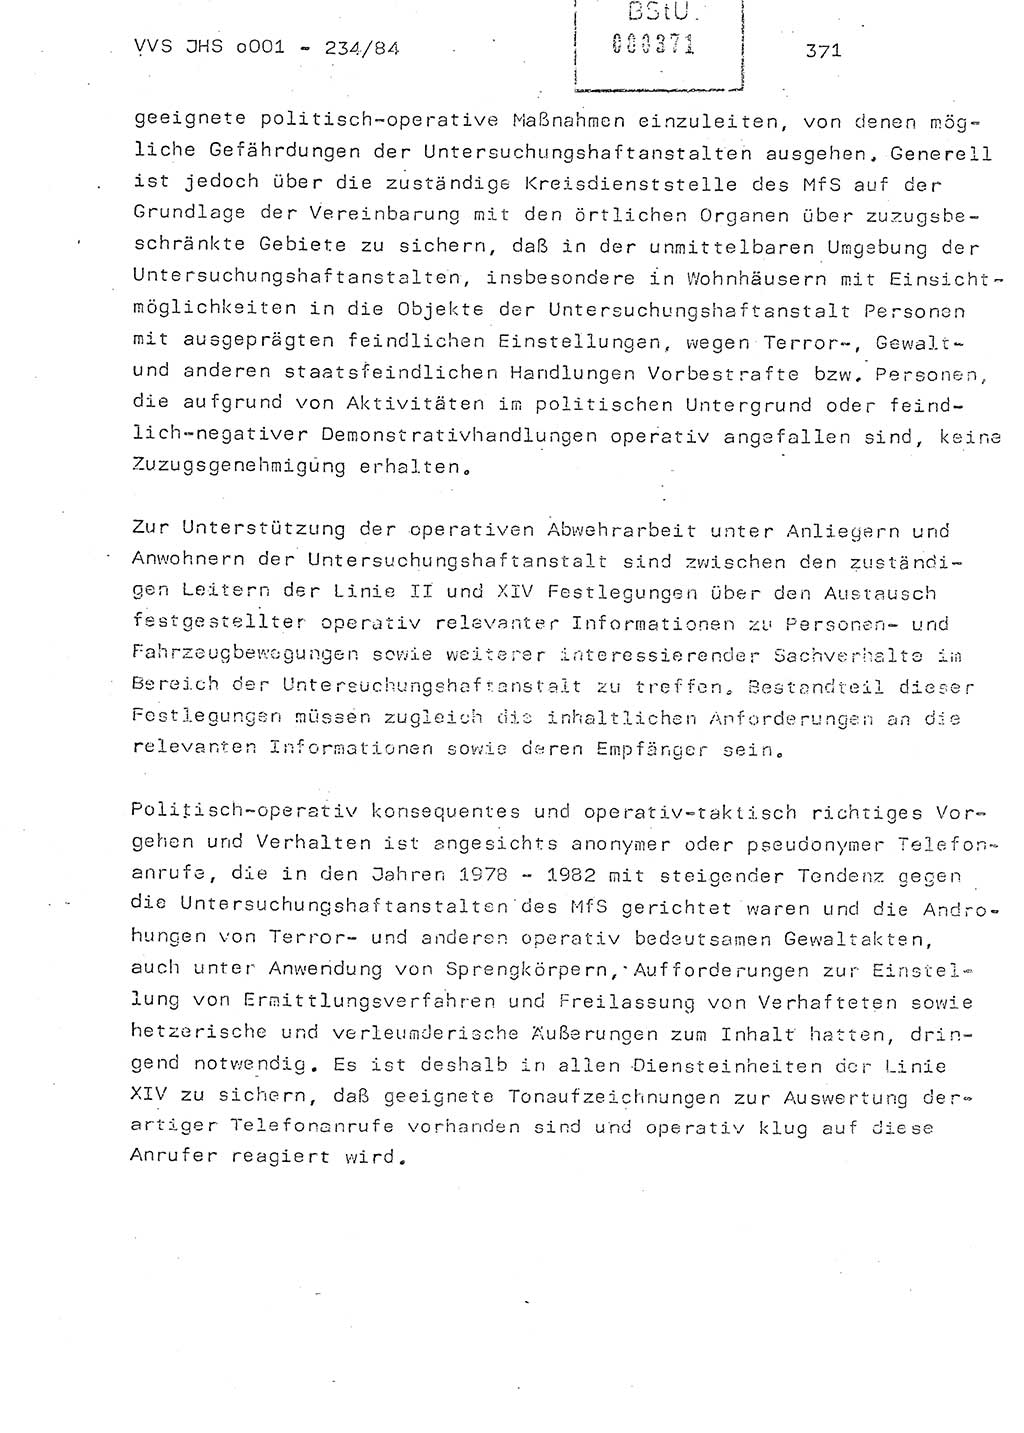 Dissertation Oberst Siegfried Rataizick (Abt. ⅩⅣ), Oberstleutnant Volkmar Heinz (Abt. ⅩⅣ), Oberstleutnant Werner Stein (HA Ⅸ), Hauptmann Heinz Conrad (JHS), Ministerium für Staatssicherheit (MfS) [Deutsche Demokratische Republik (DDR)], Juristische Hochschule (JHS), Vertrauliche Verschlußsache (VVS) o001-234/84, Potsdam 1984, Seite 371 (Diss. MfS DDR JHS VVS o001-234/84 1984, S. 371)